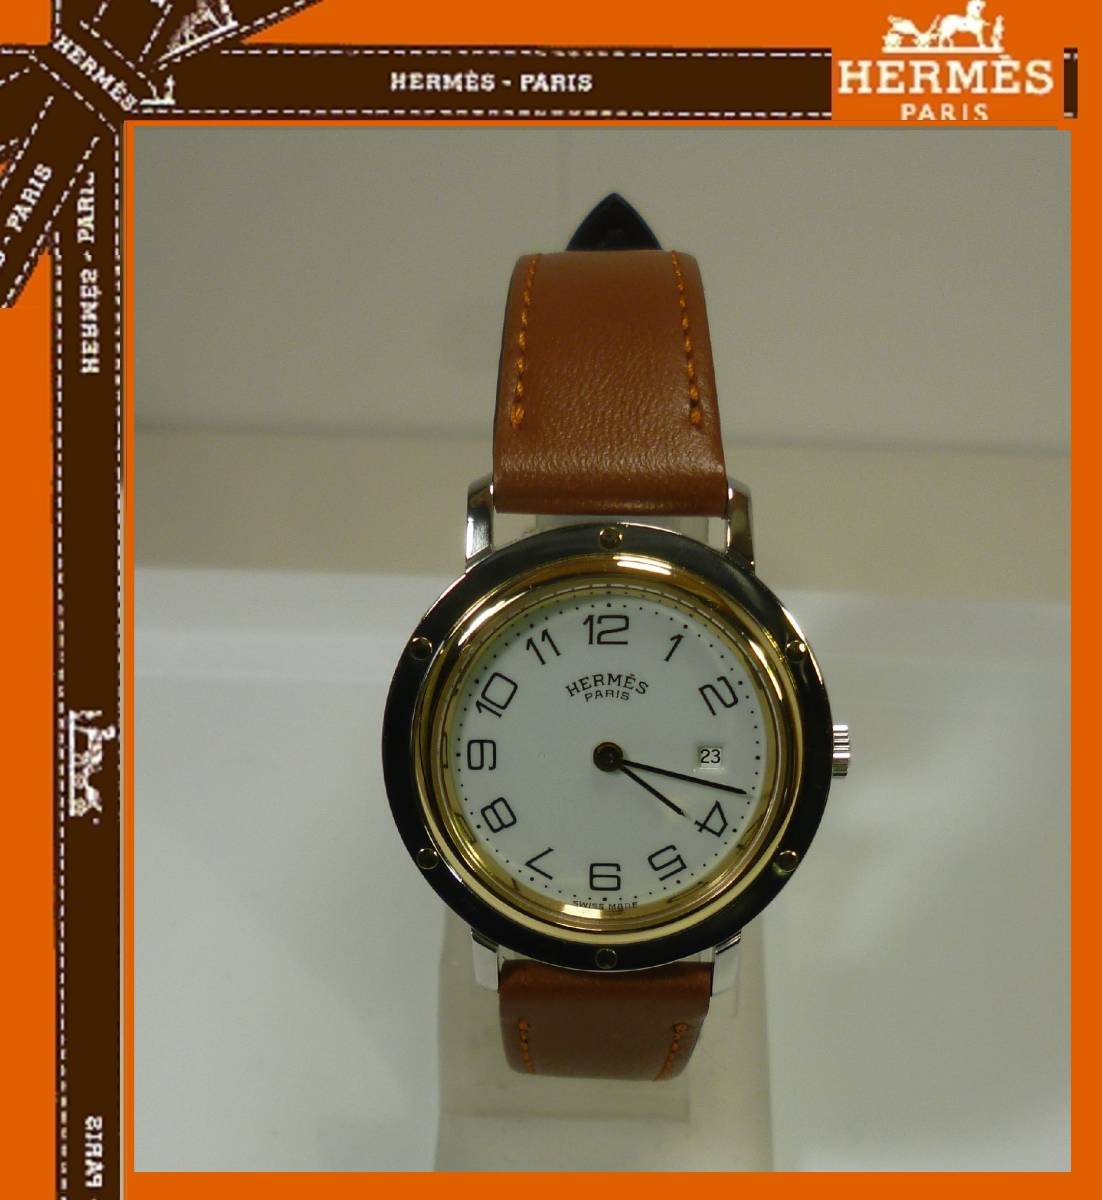 売れ筋ランキング 美品 CL4.420 HERMES エルメス 時計 クリッパー ボーイズ f2075438 お得なセール価格 -mios.co.jp